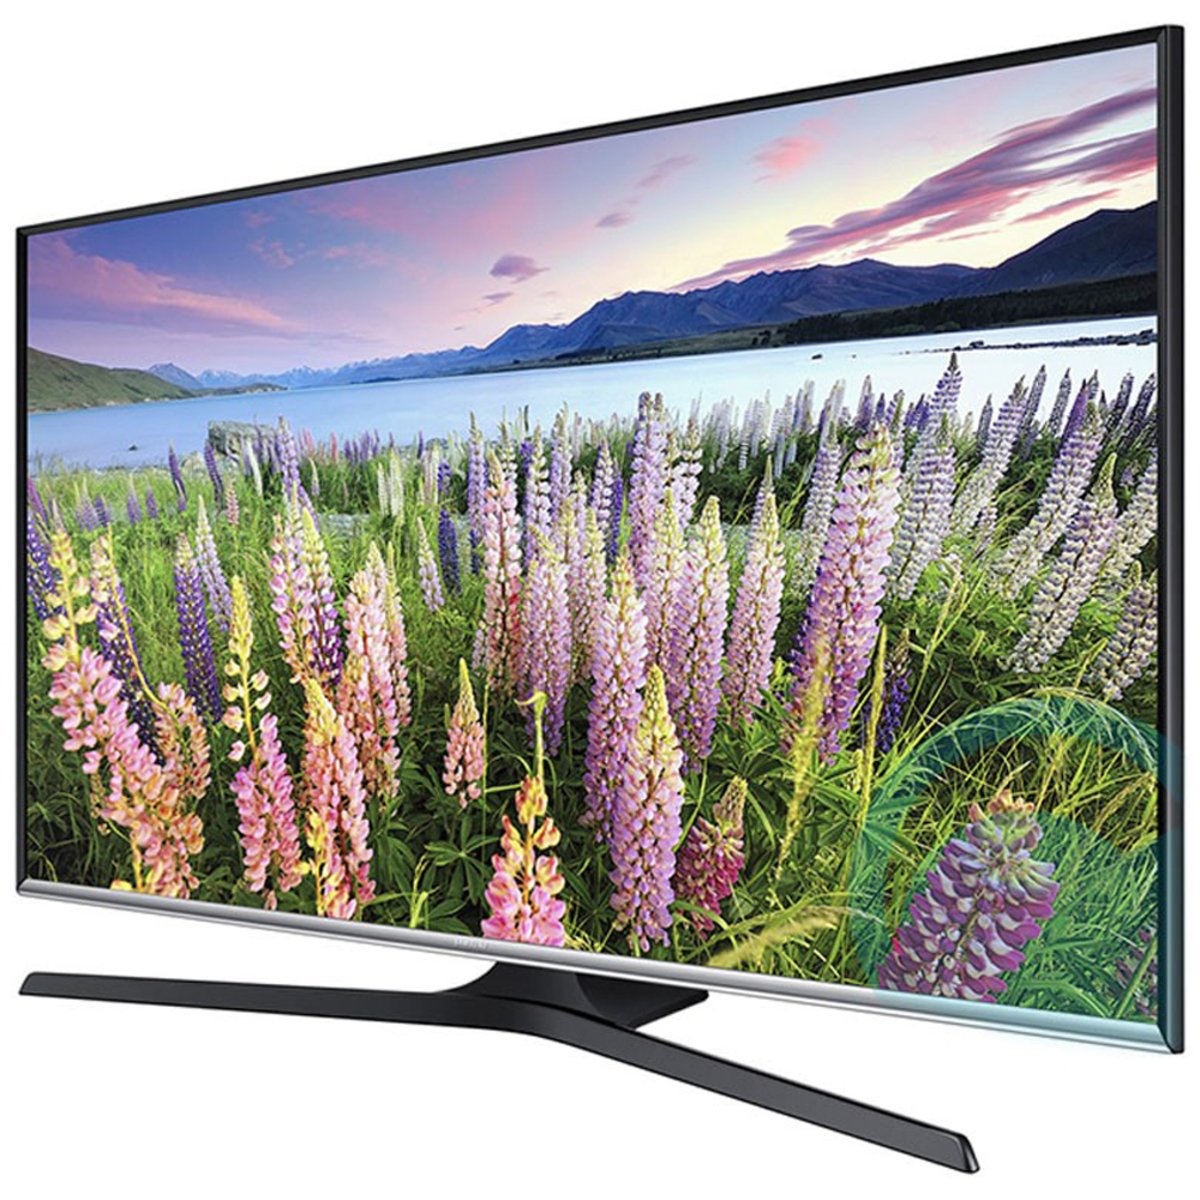 Samsung LED TV UA50J5100AR 50inch